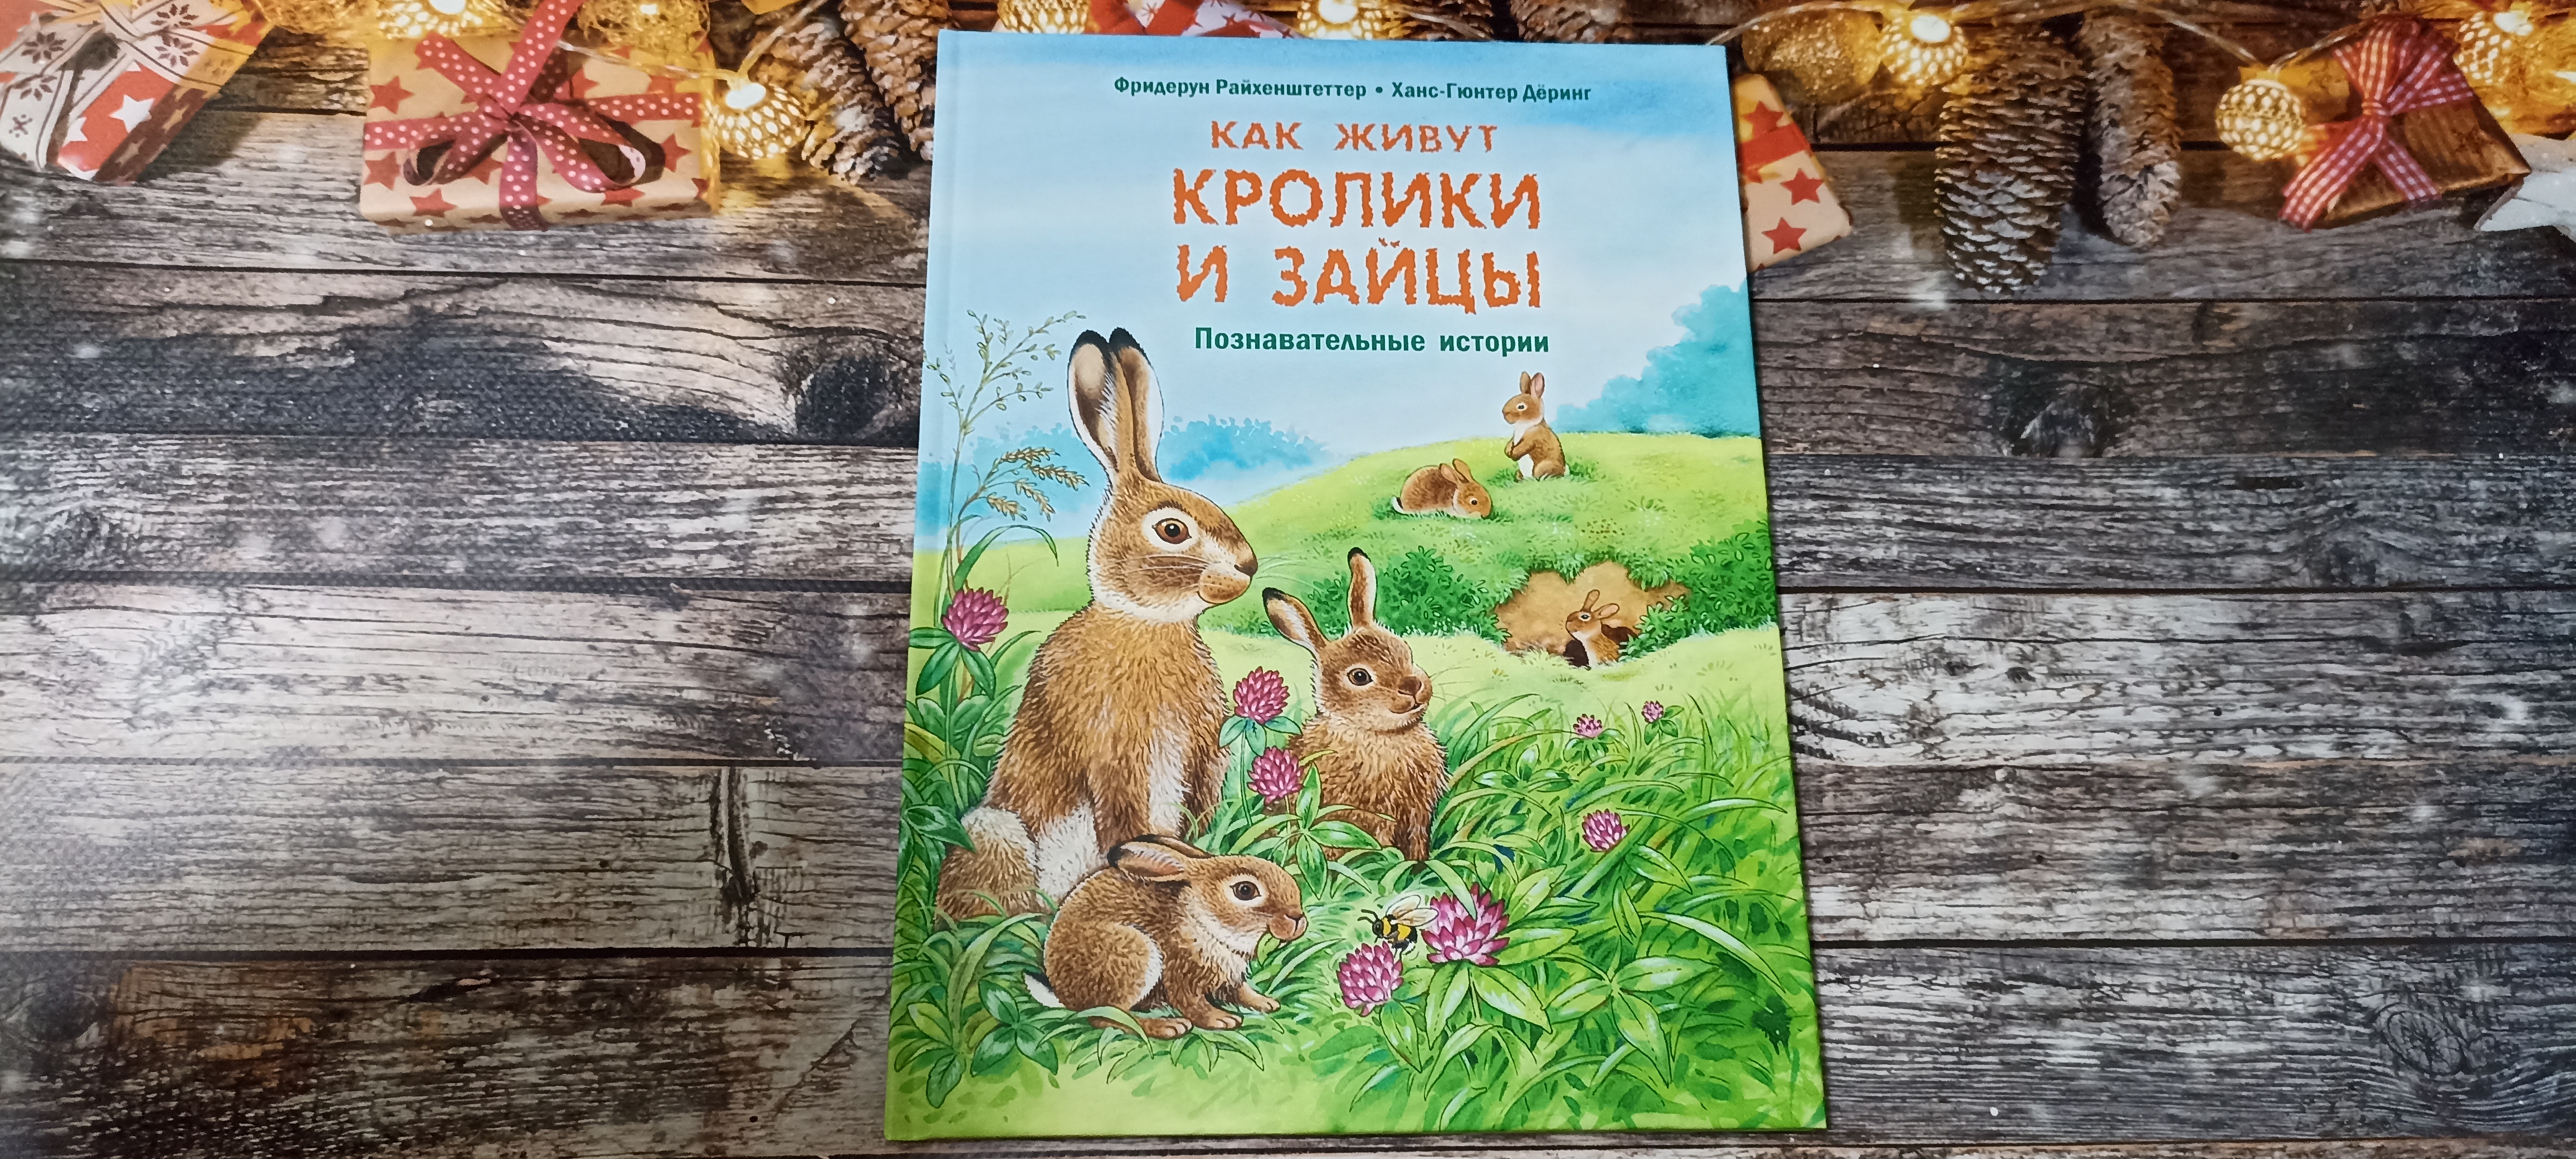 ✨❄ Серия познавательных историй ? Как живут кролики и зайцы?